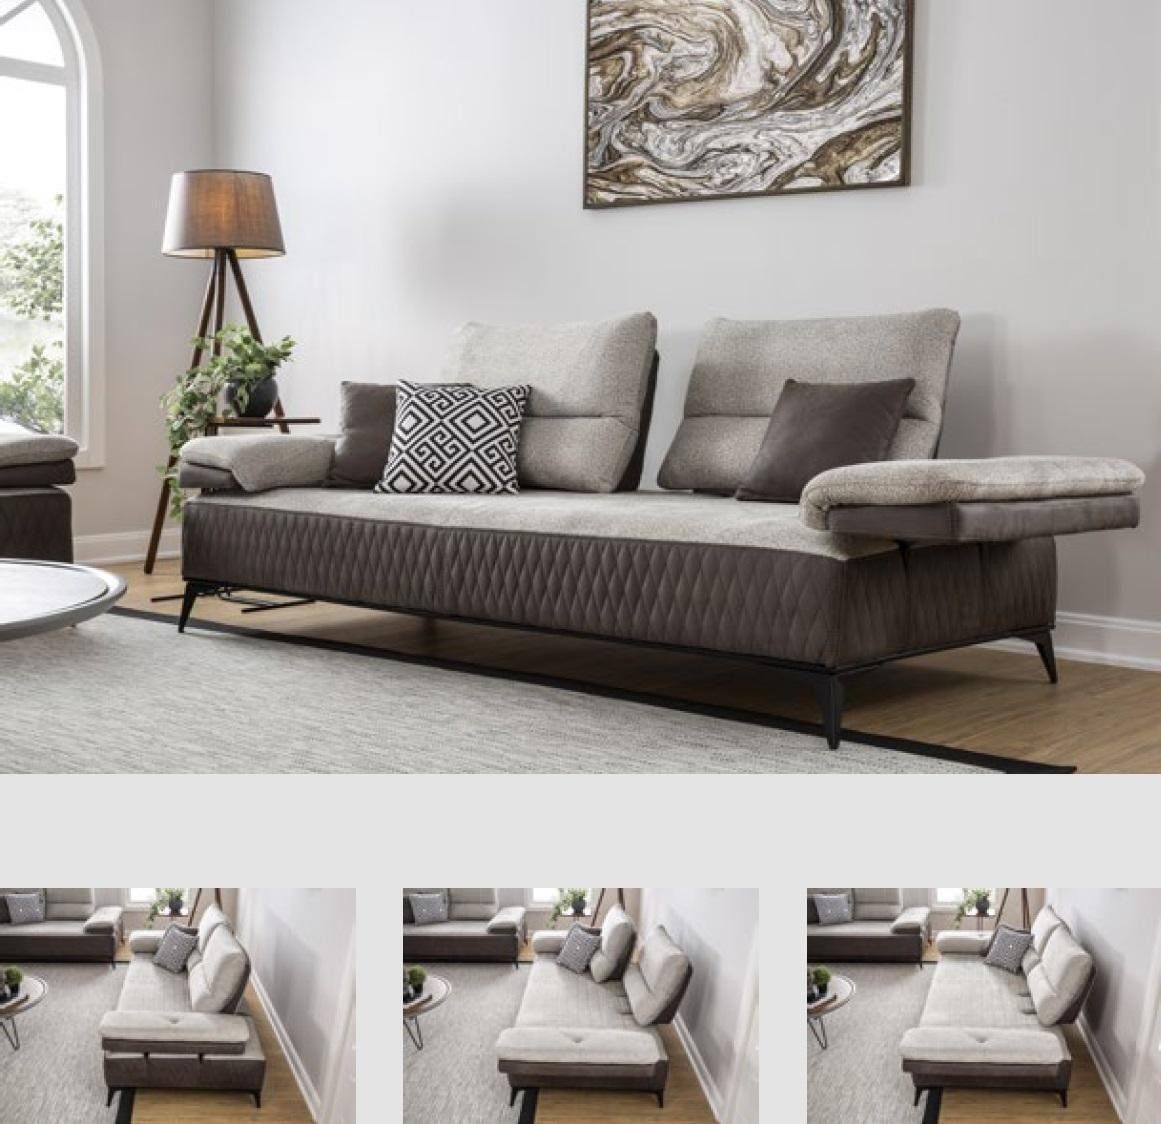 JVmoebel 3-Sitzer Dreisitzer Moderne Couch Möbel Grau Couchen Klassische Sofas Stoff